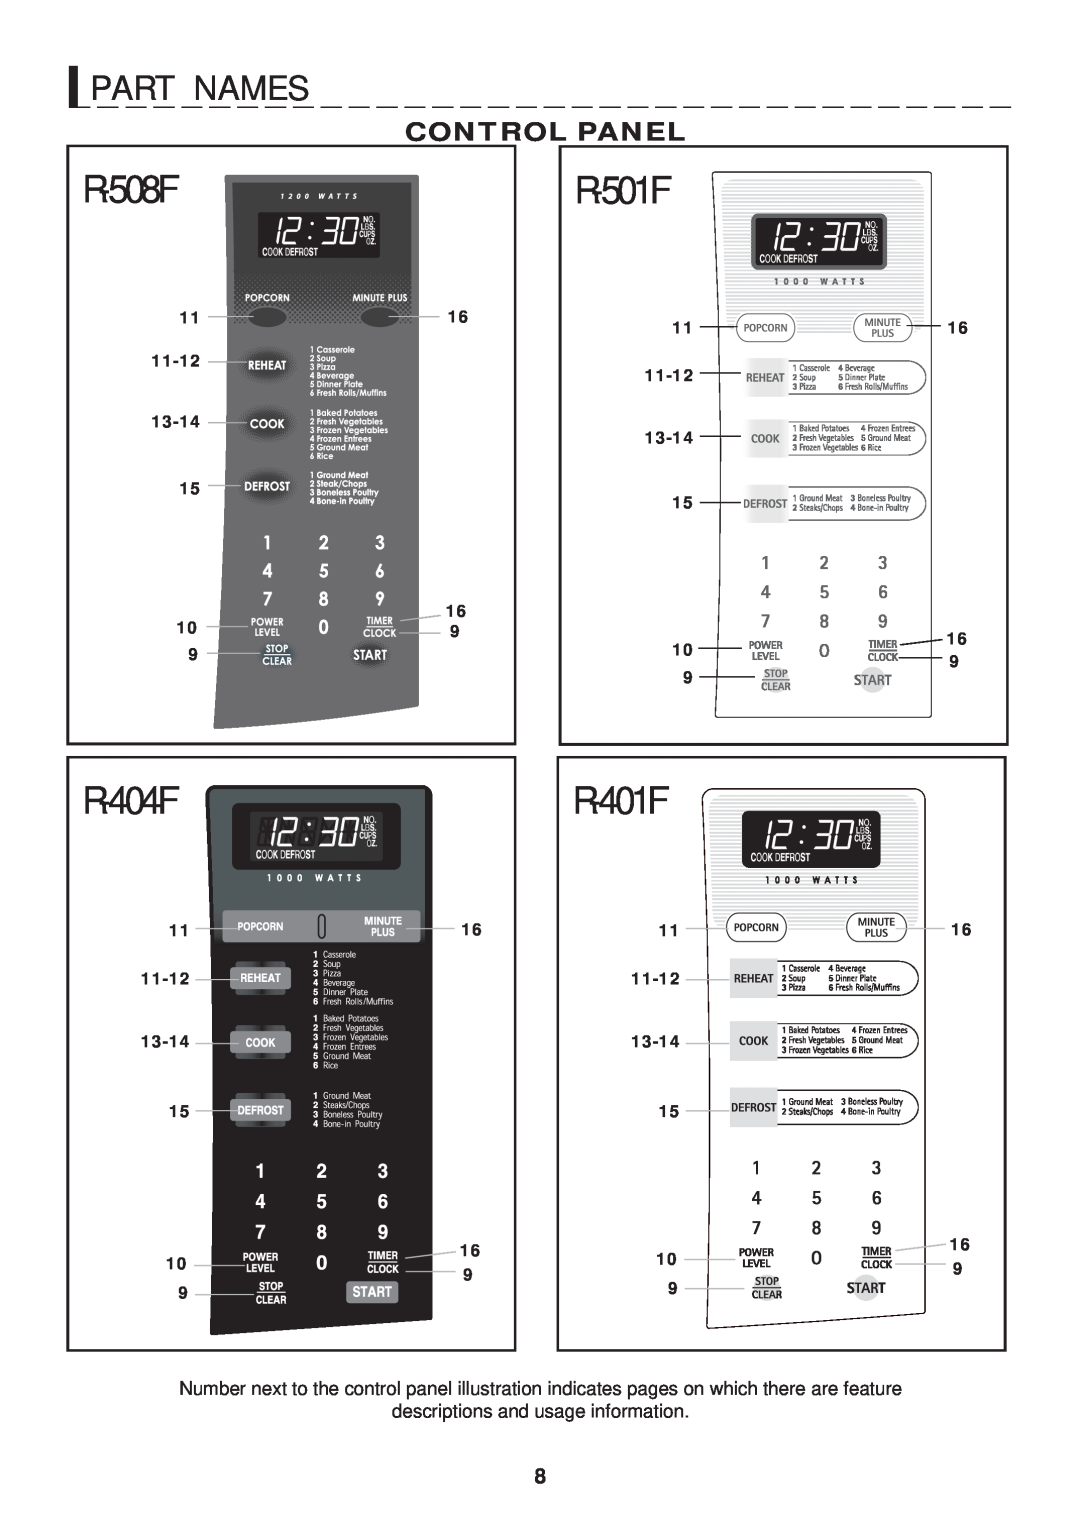 GE R-401F, R-501F R - 5 0 1 F, R - 4 0 1 F, P A R T N A M E S, Control Panel, R - 5 0 8 F, 11-12, 13-14, R - 4 0 4 F 